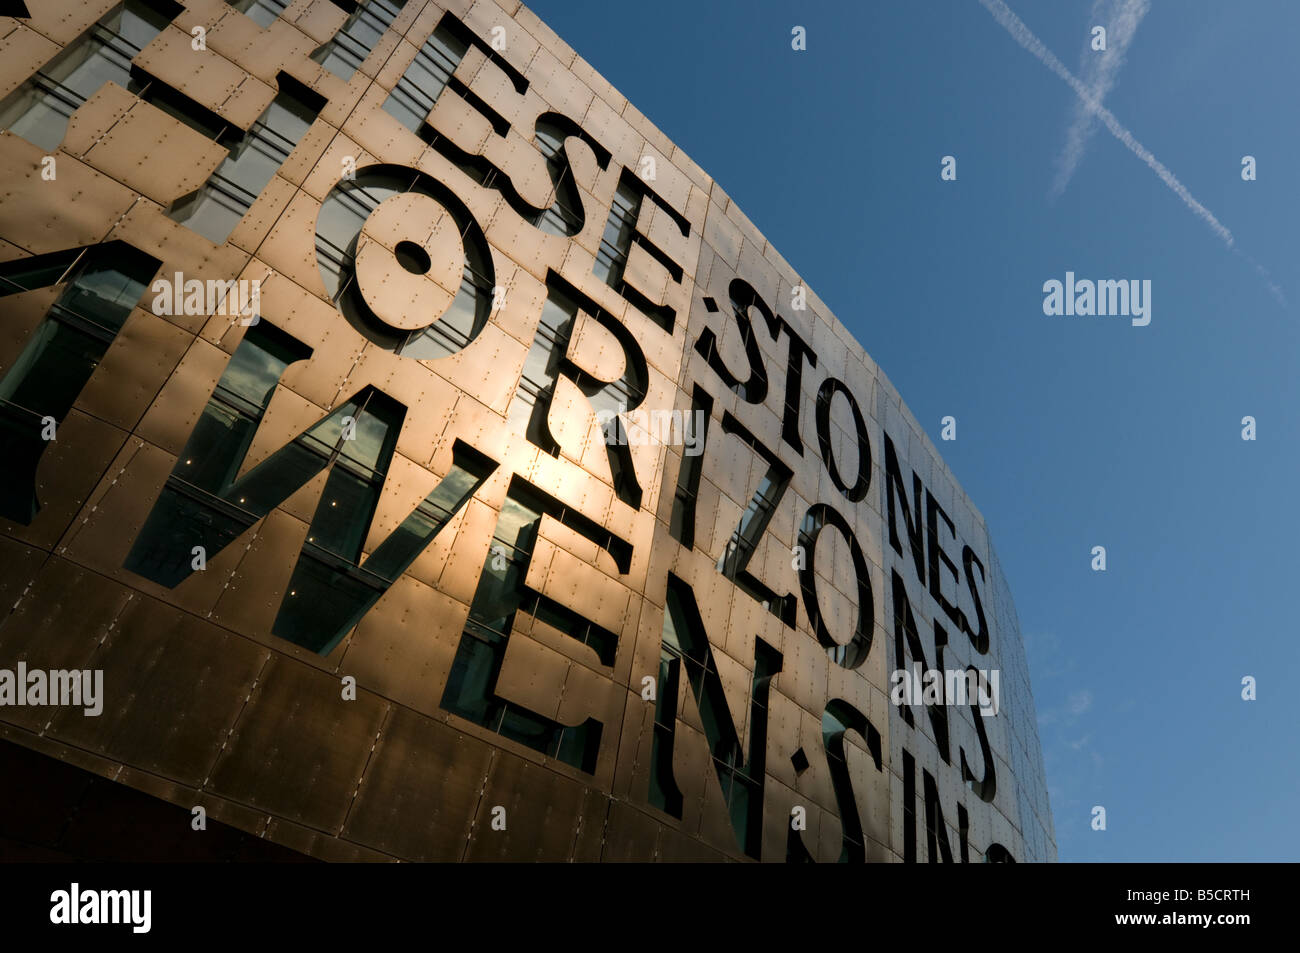 Außenseite des Wales Millennium Centre Cardiff mit der Poesie des Gwyneth Lewis eingearbeitet in der Kupfer-Verkleidung Fassade Stockfoto